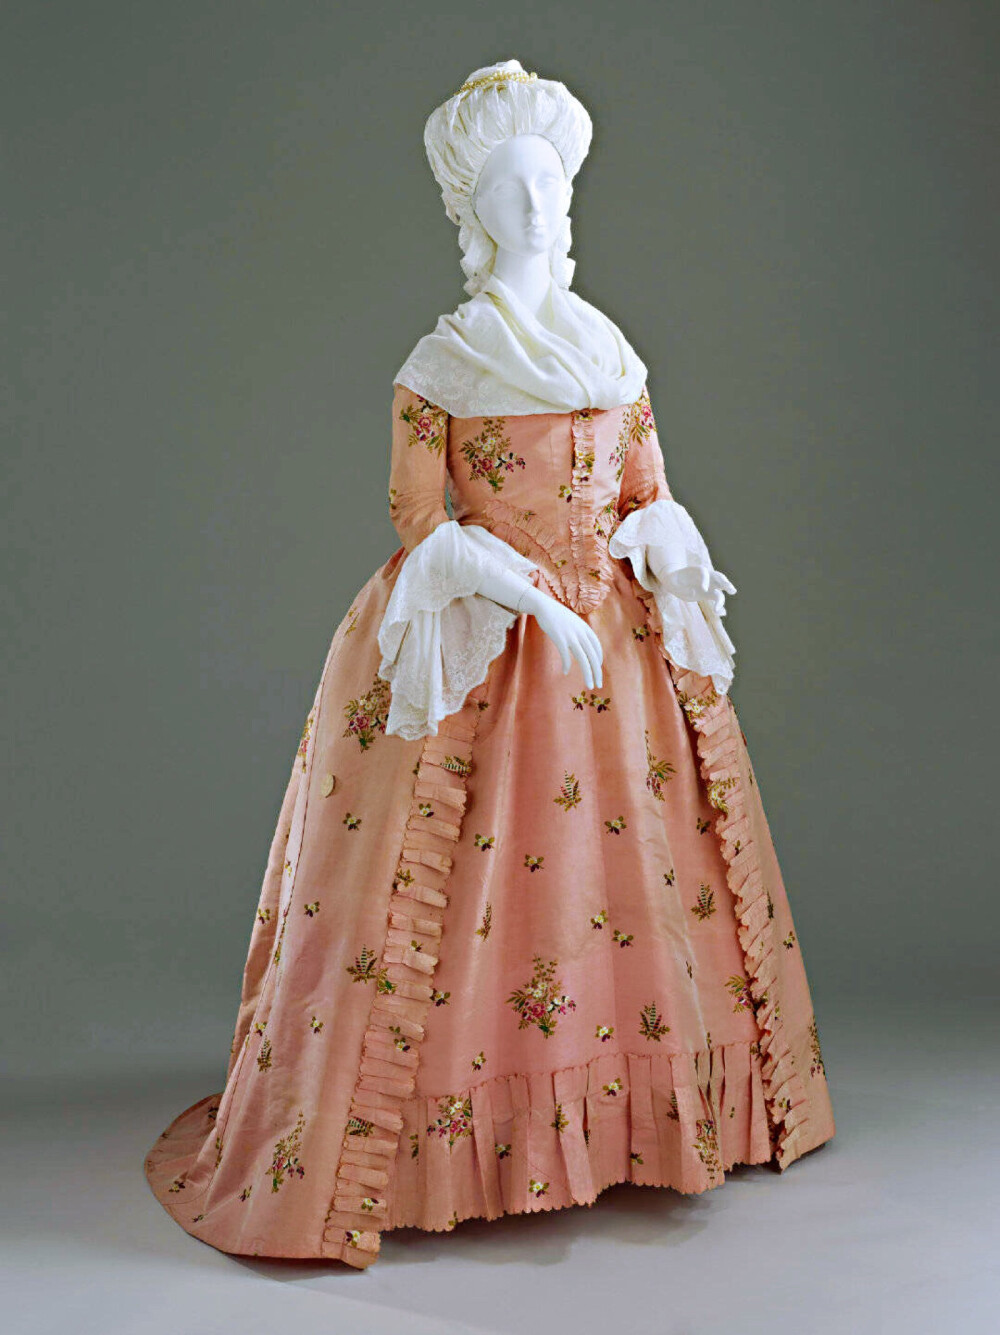 这种田园风的裙子很得玛丽·安托瓦内特喜爱,并被大力推广